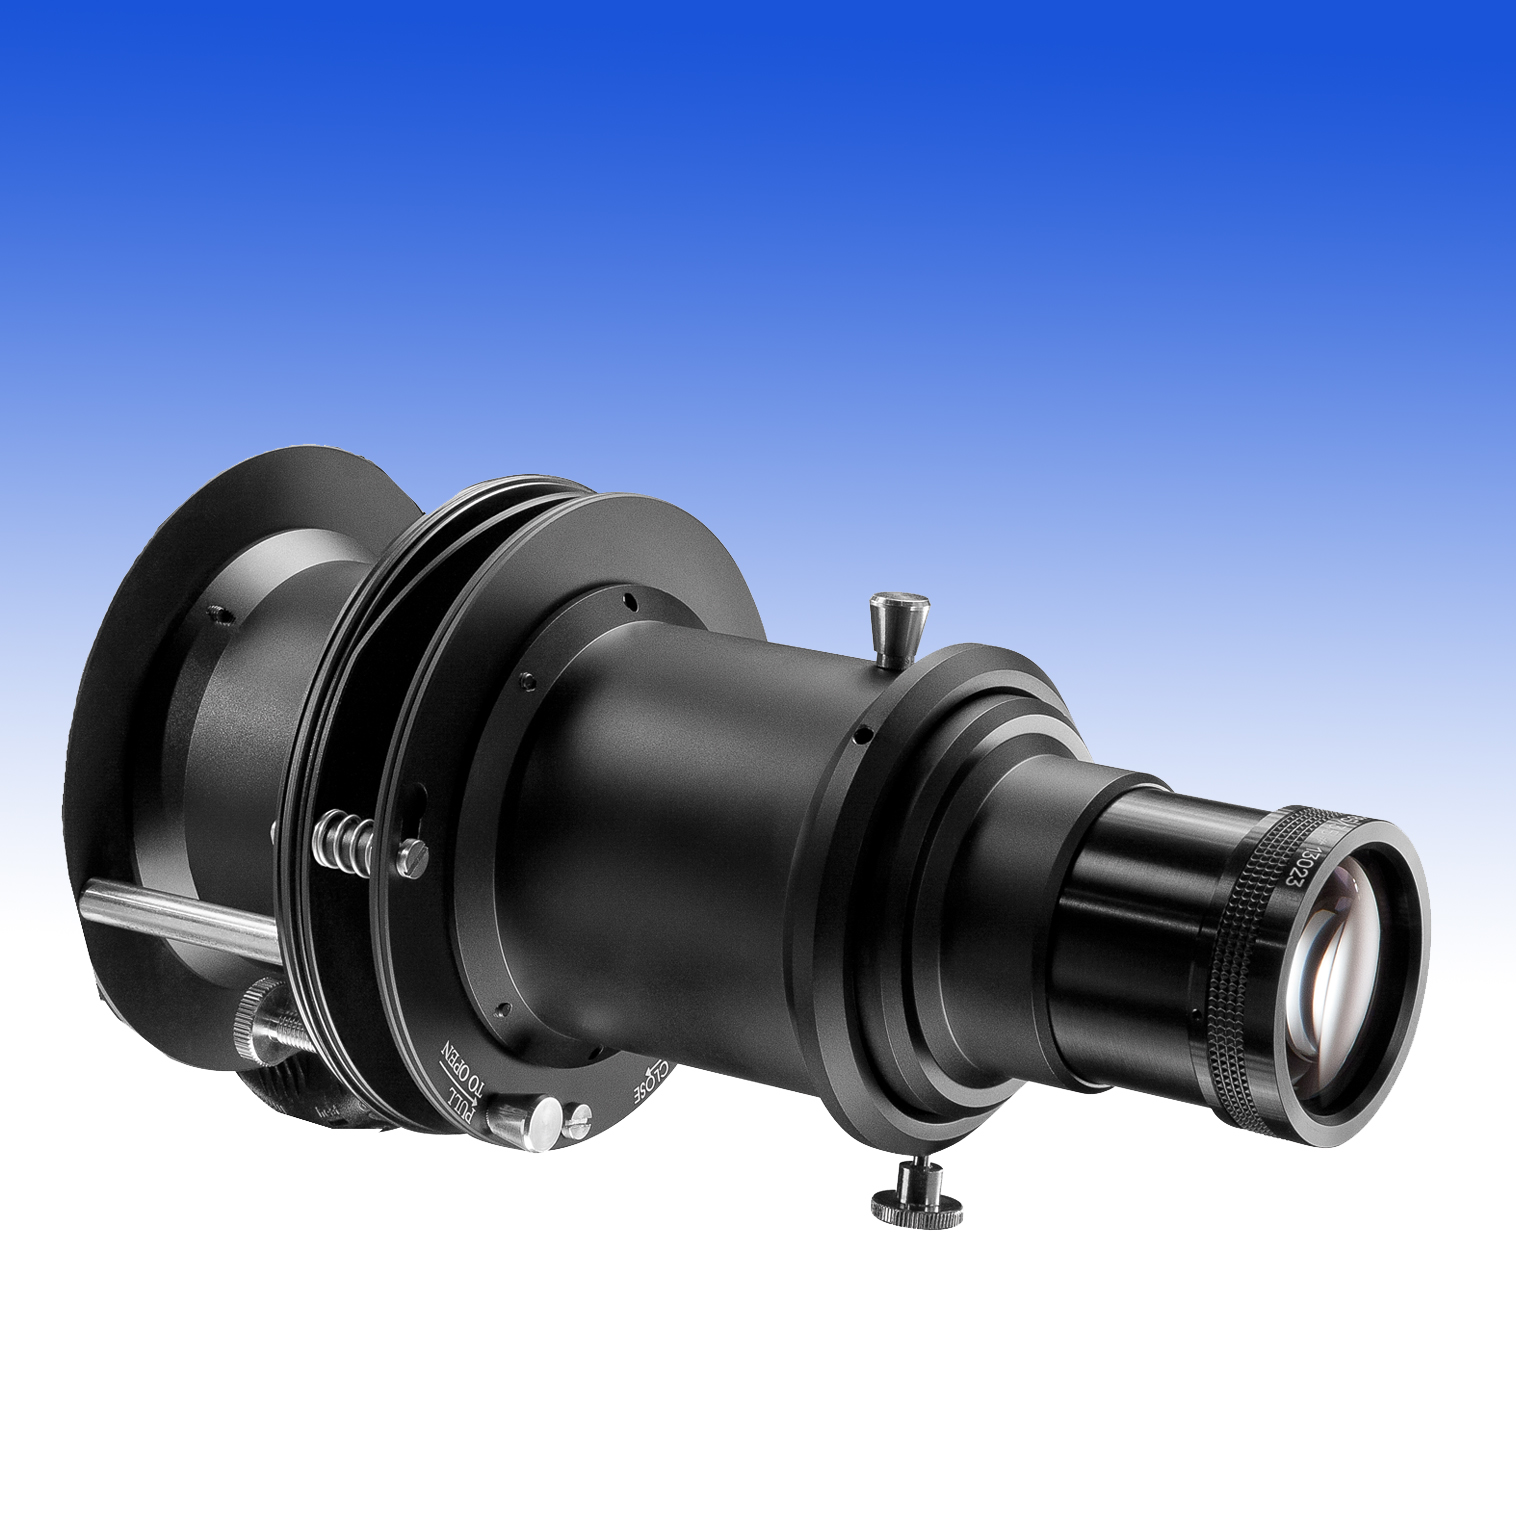 DP400KU Imager für die DLED9 komplett mit Objektiv 3,5/185mm, Gobohalter und Goboset